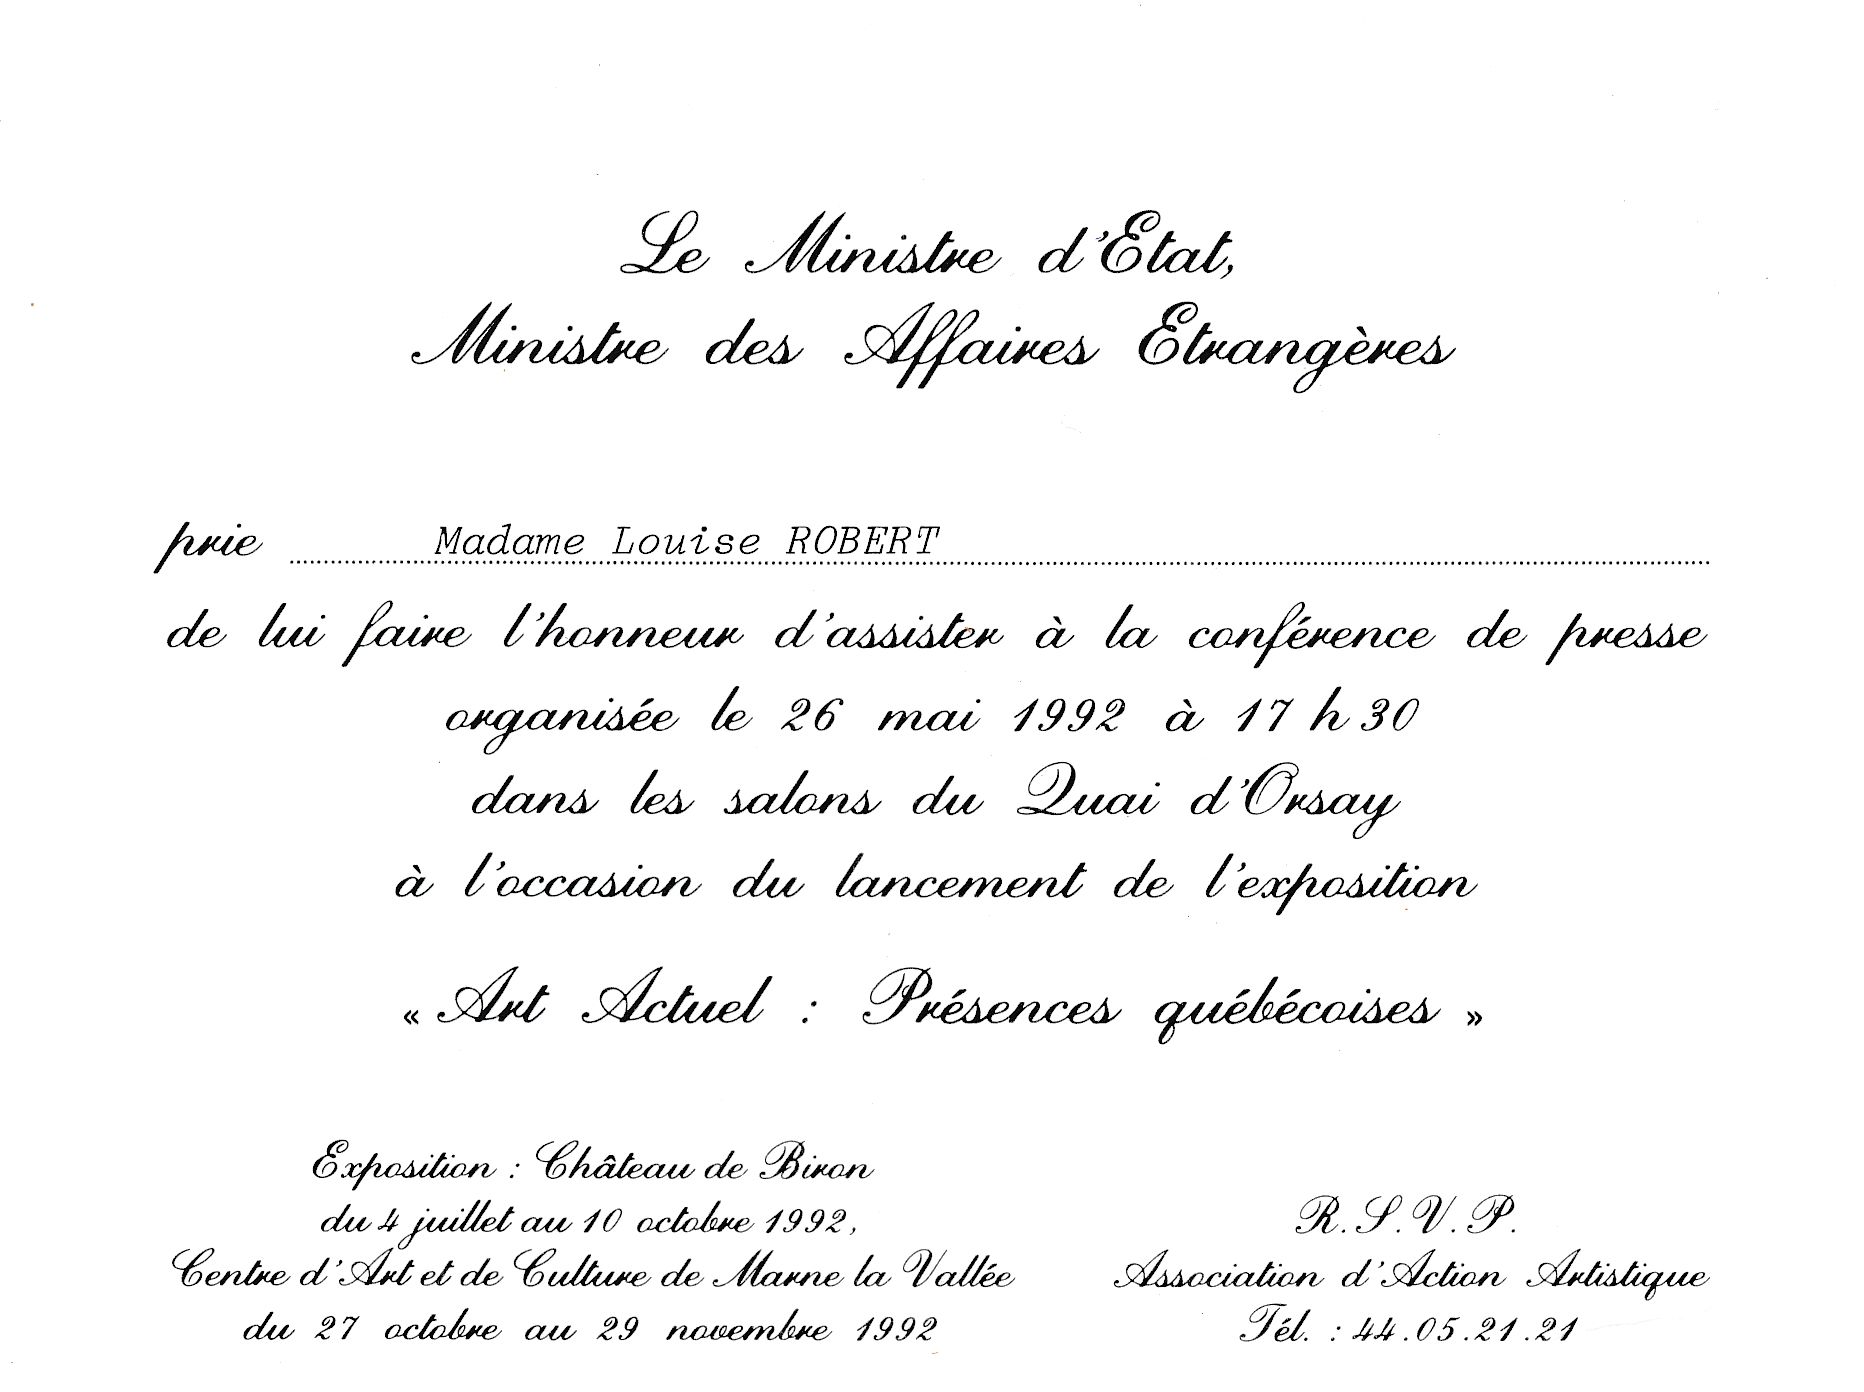 Invitation au Quai d’Orsay, Paris, pour la conférence de presse à l’occasion du lancement de l’exposition Art actuel. Présences québécoises, le 26 mai 1992.